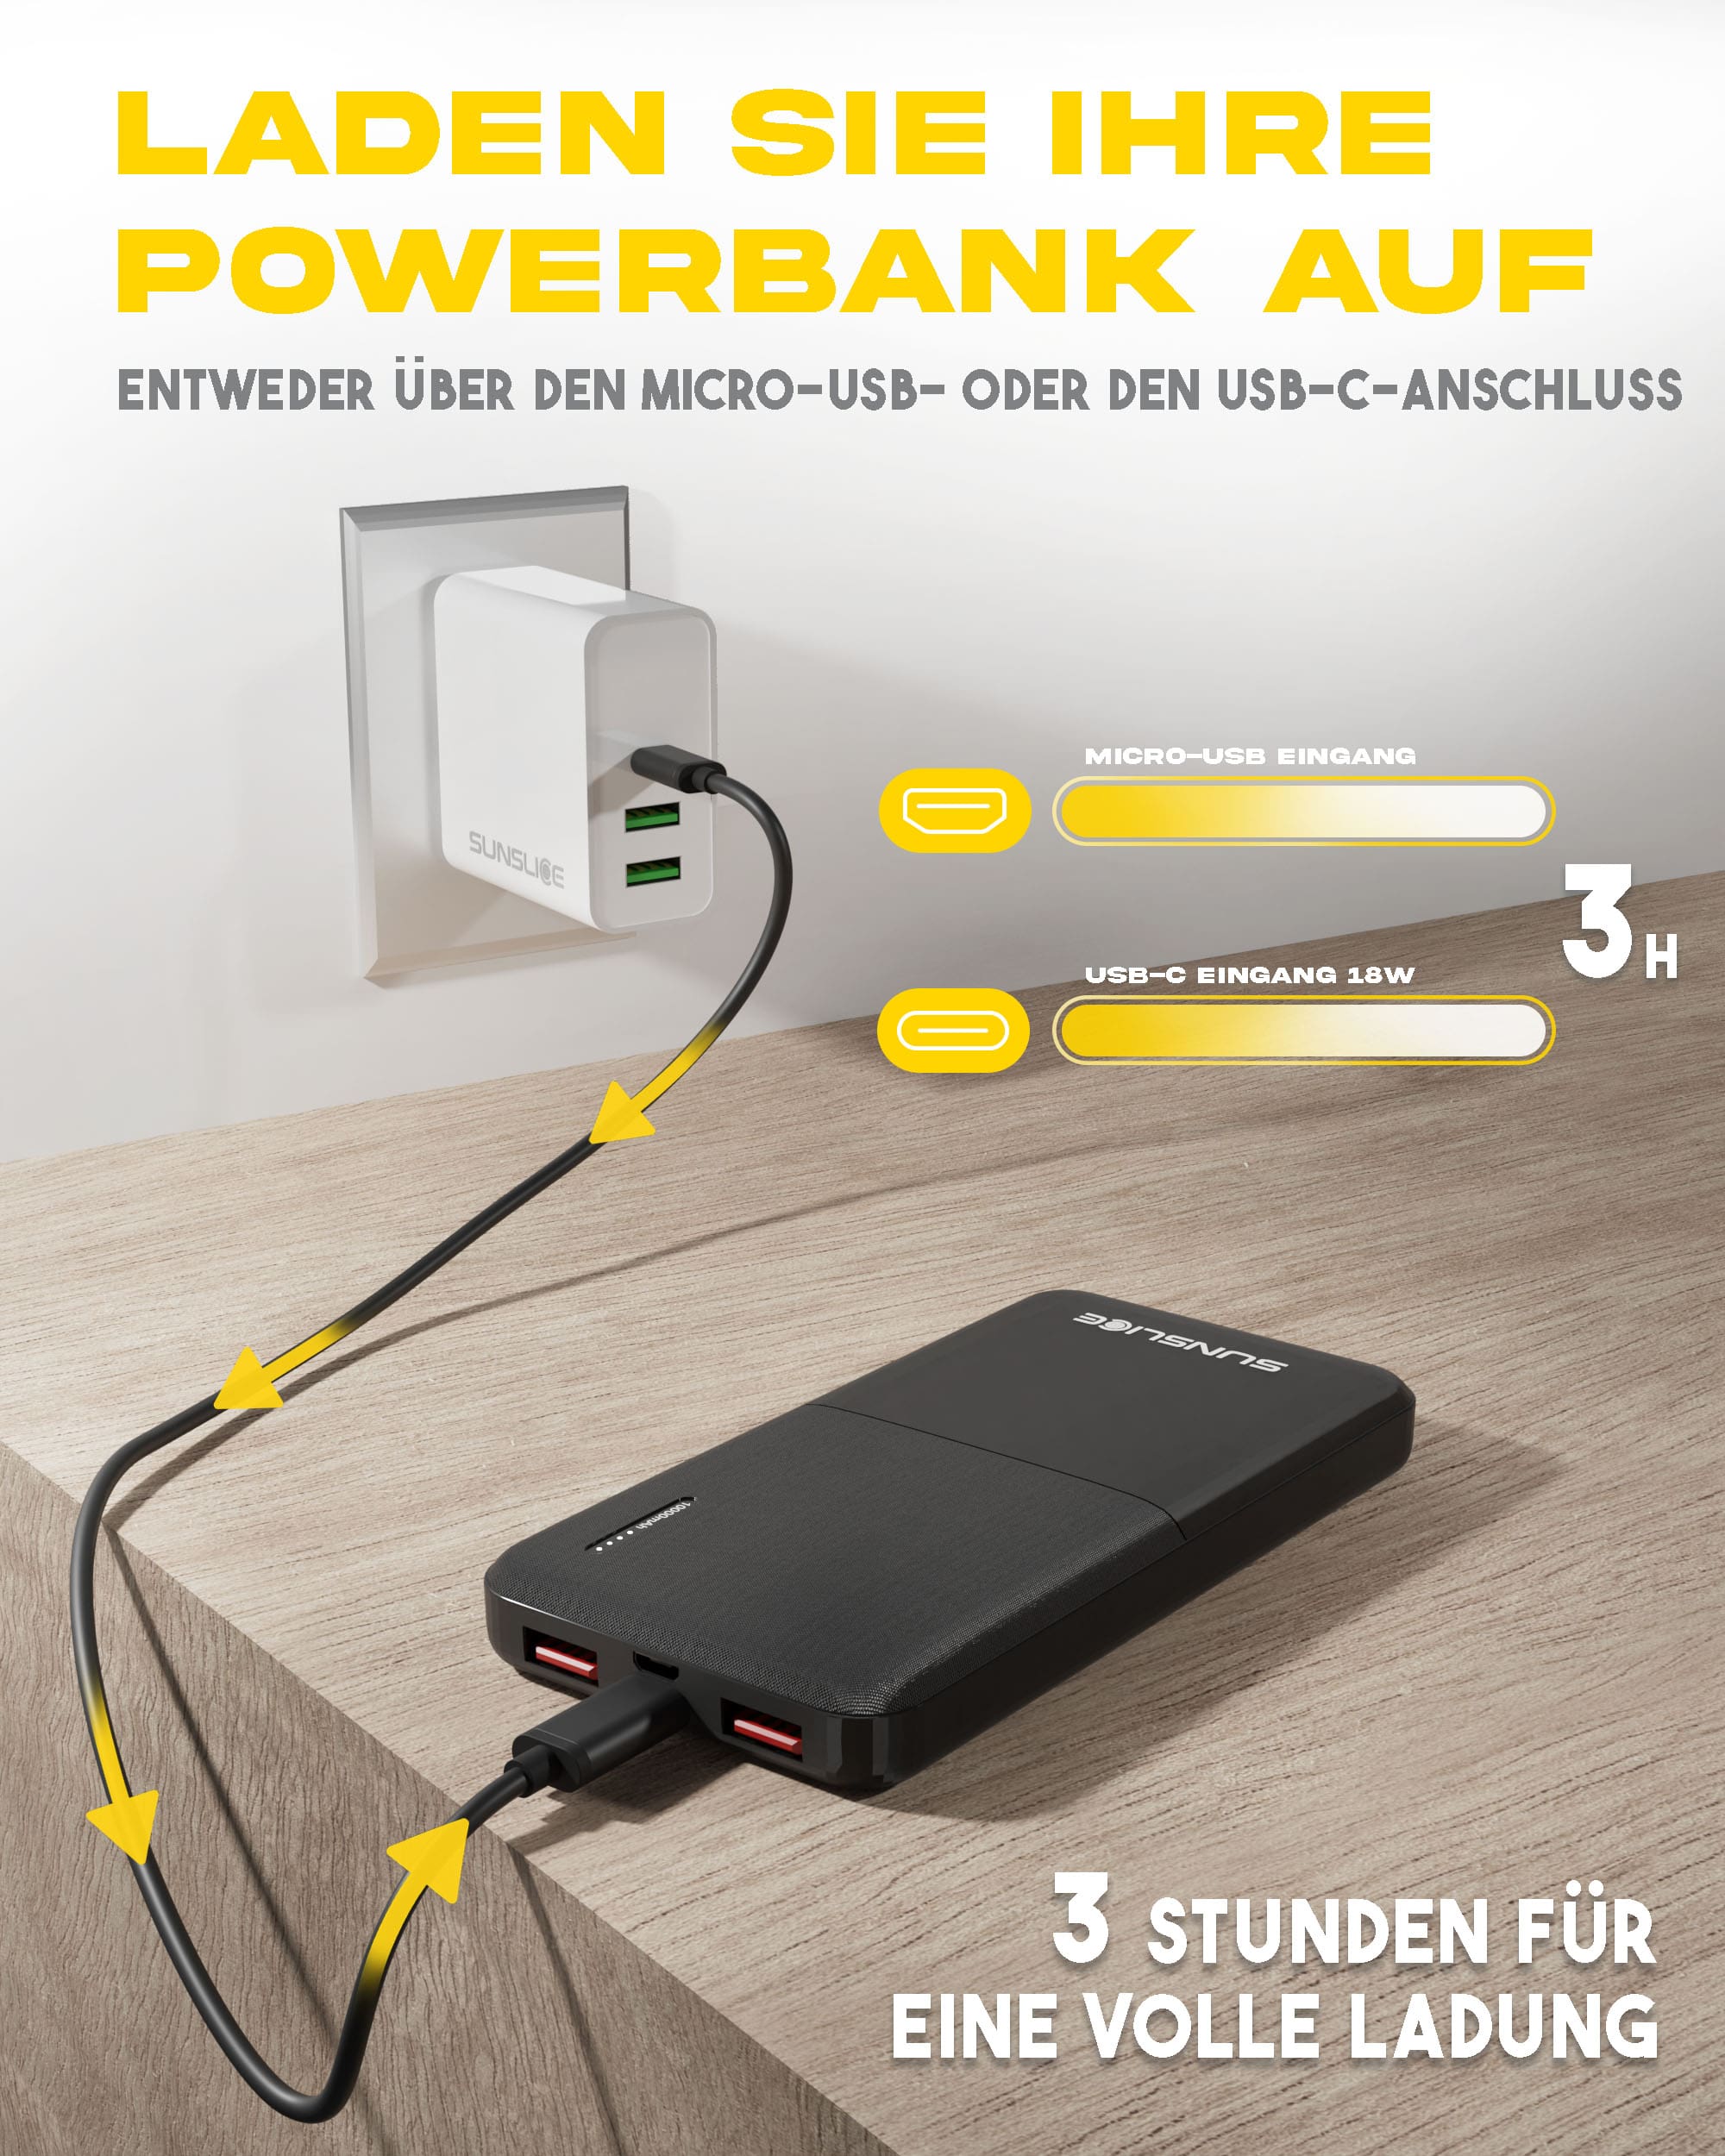 Laden Sie Ihre Powerbank über den Micro-USB- oder den USB-C-Anschluss auf: 3 Stunden für eine volle Ladung